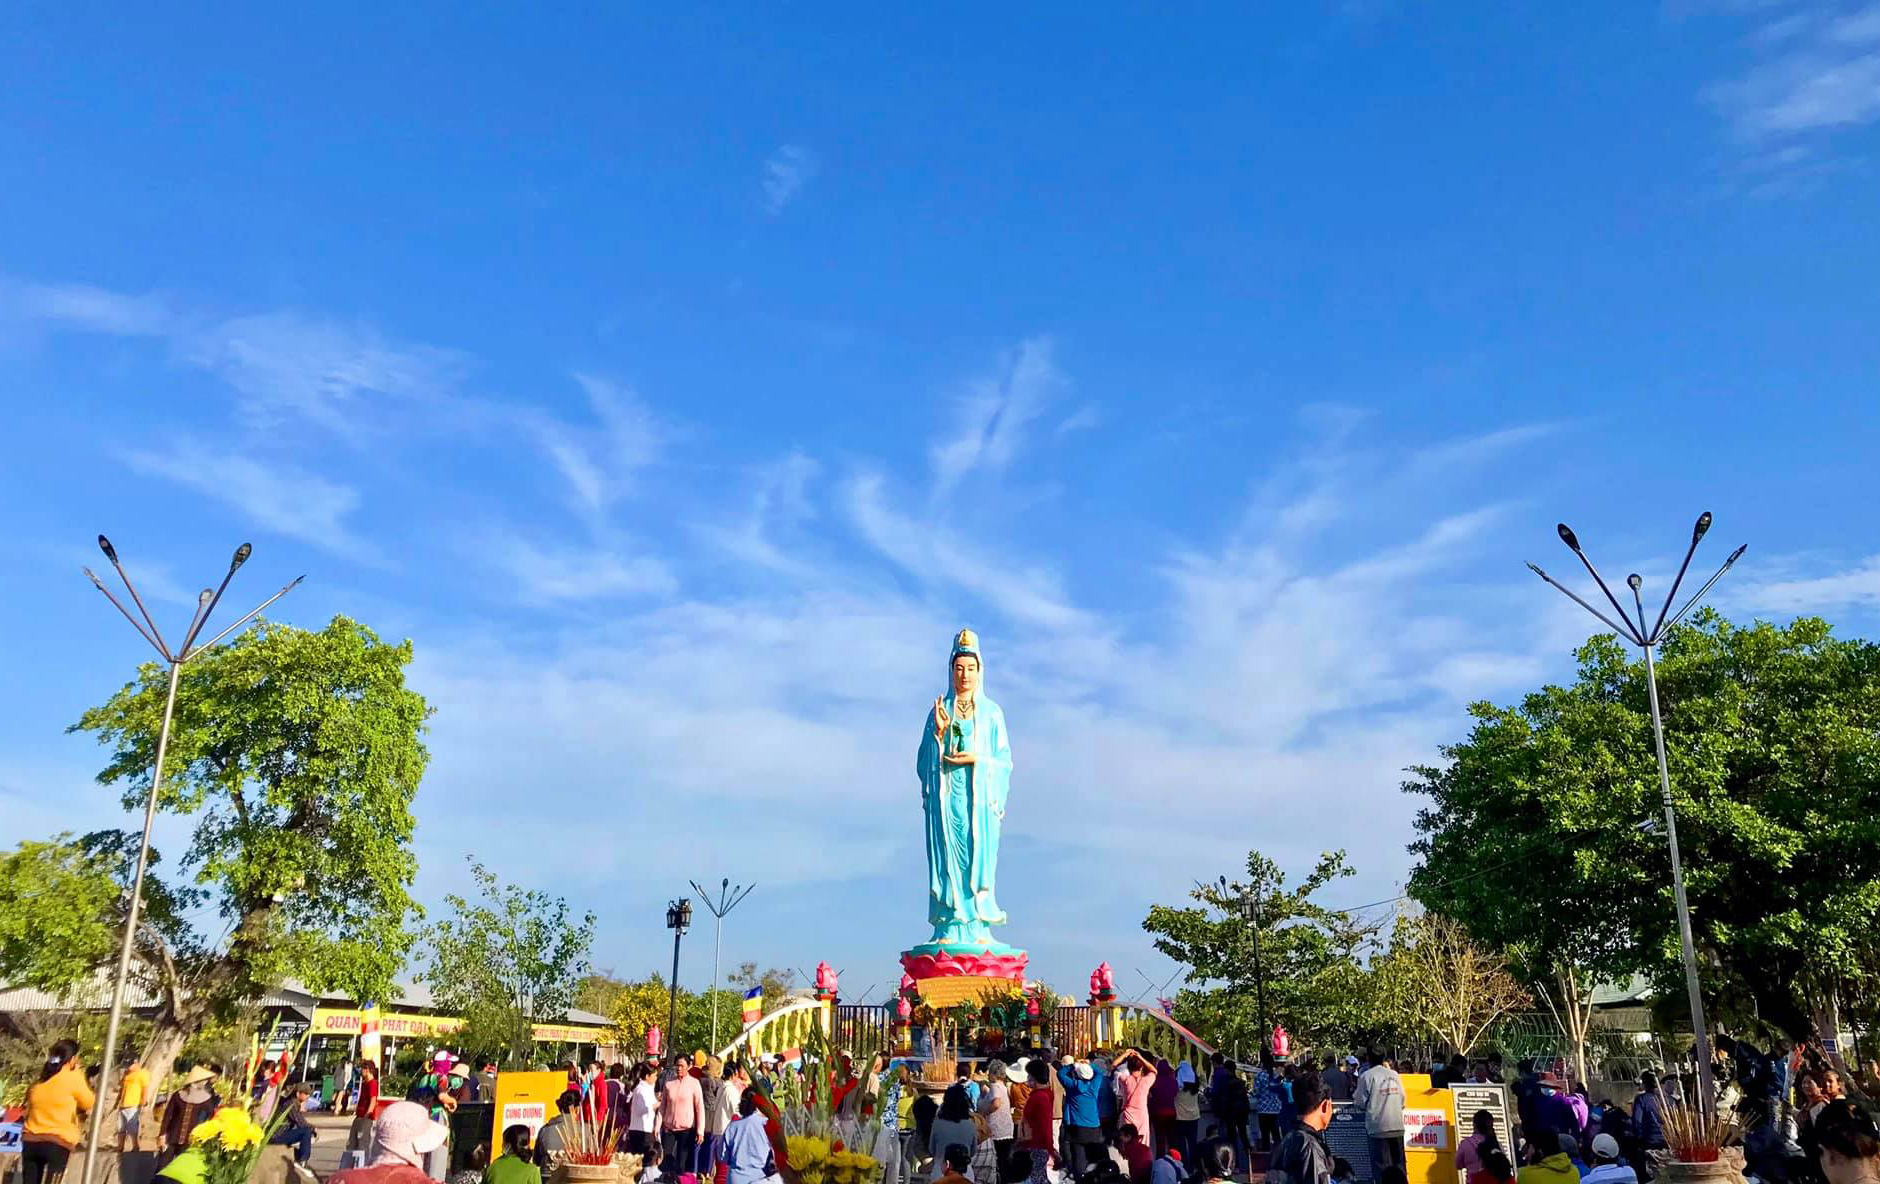 Phật Bà Nam Hải – Phật Bà Quan Âm nổi tiếng linh thiêng ở Bạc Liêu